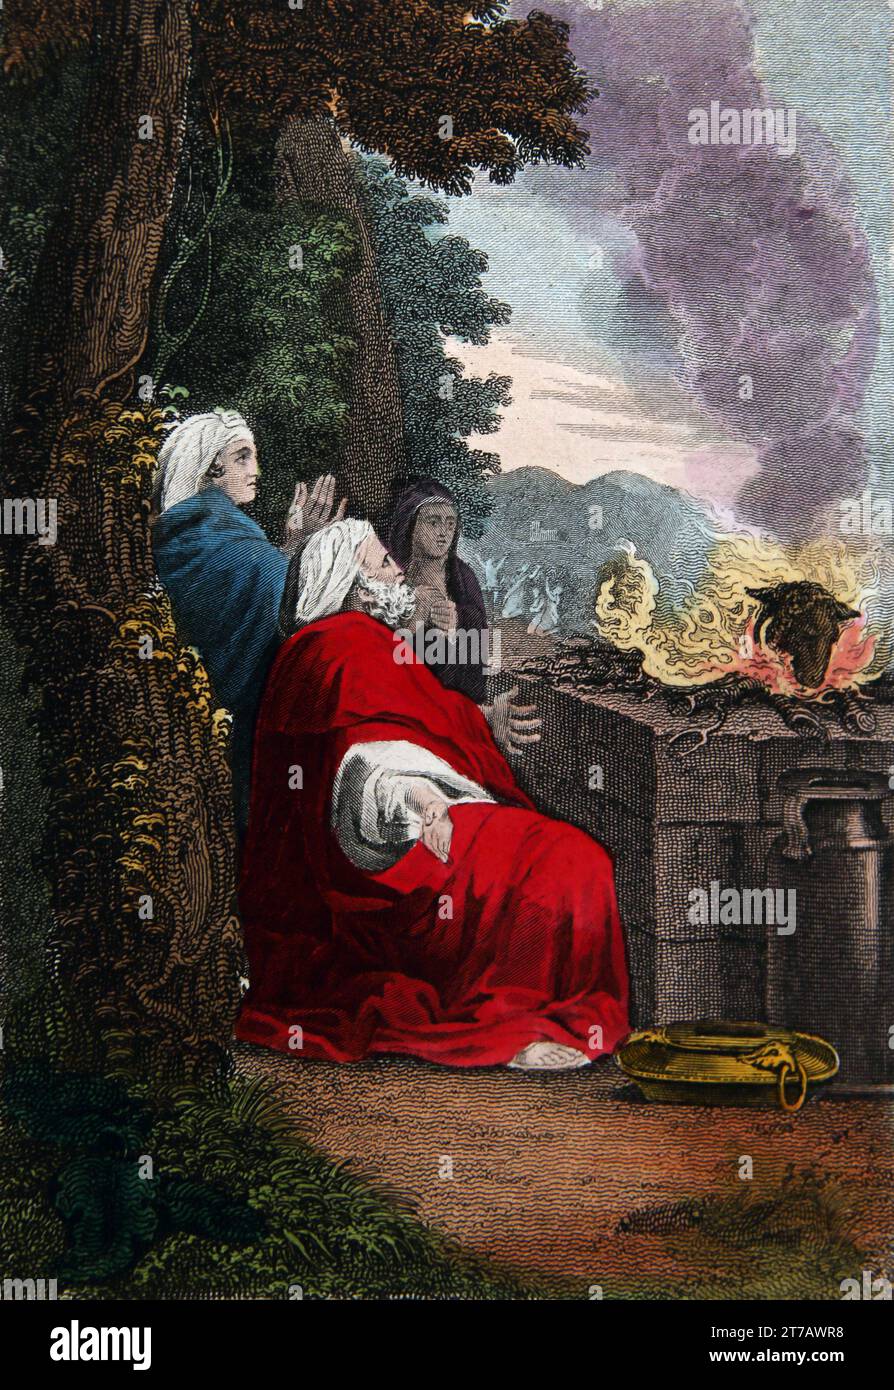 Illustration du sacrifice de Manoah (juges) Manoah et sa femme Barren sacrifiant un RAM au Seigneur afin qu'ils puissent avoir un enfant de l'auto-interprétation Banque D'Images